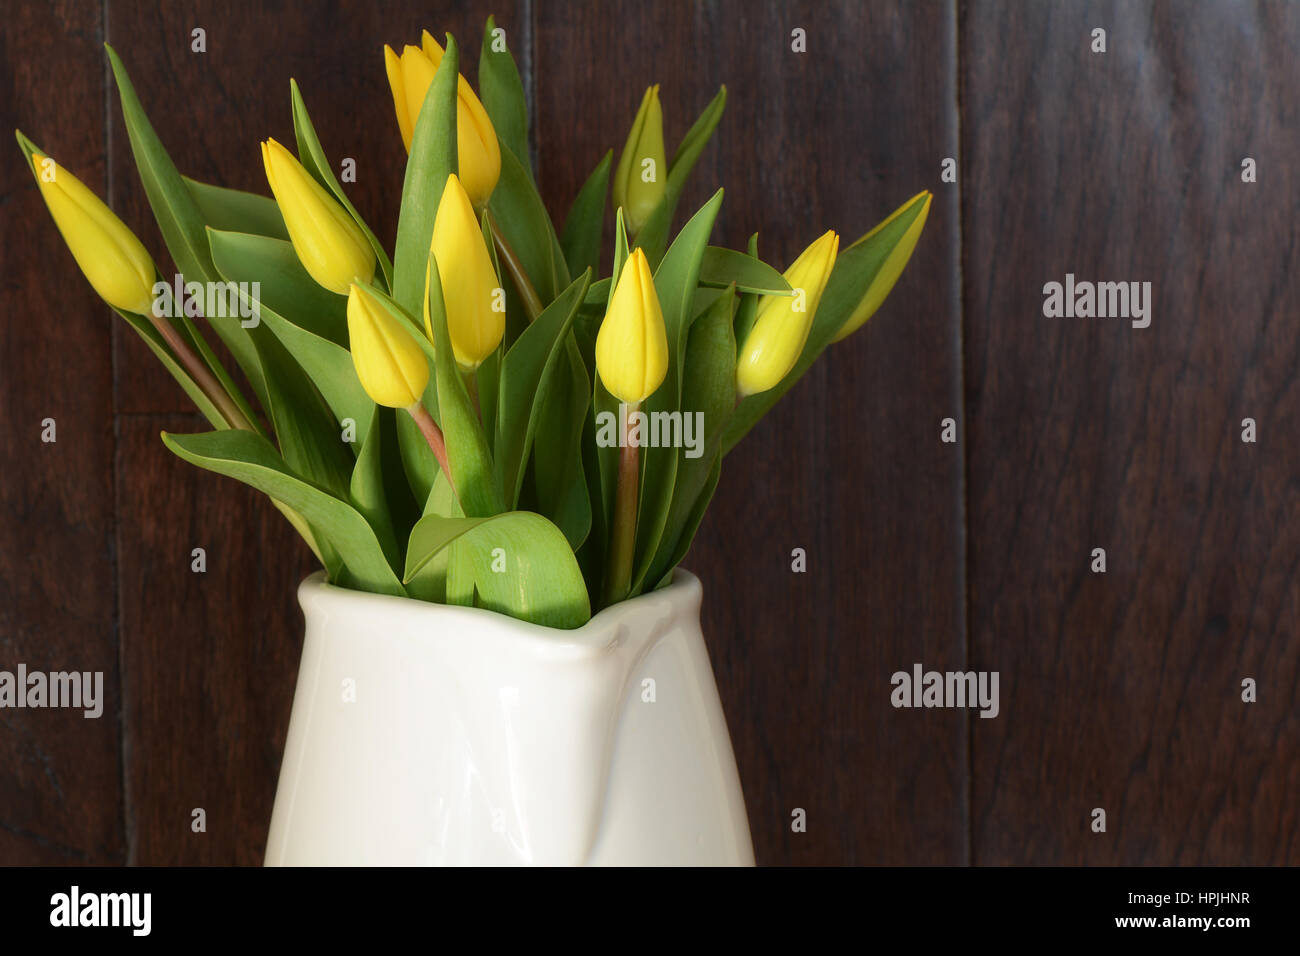 Tulipani gialli in caraffa del bianco con legno rustico sfondo in formato orizzontale Foto Stock